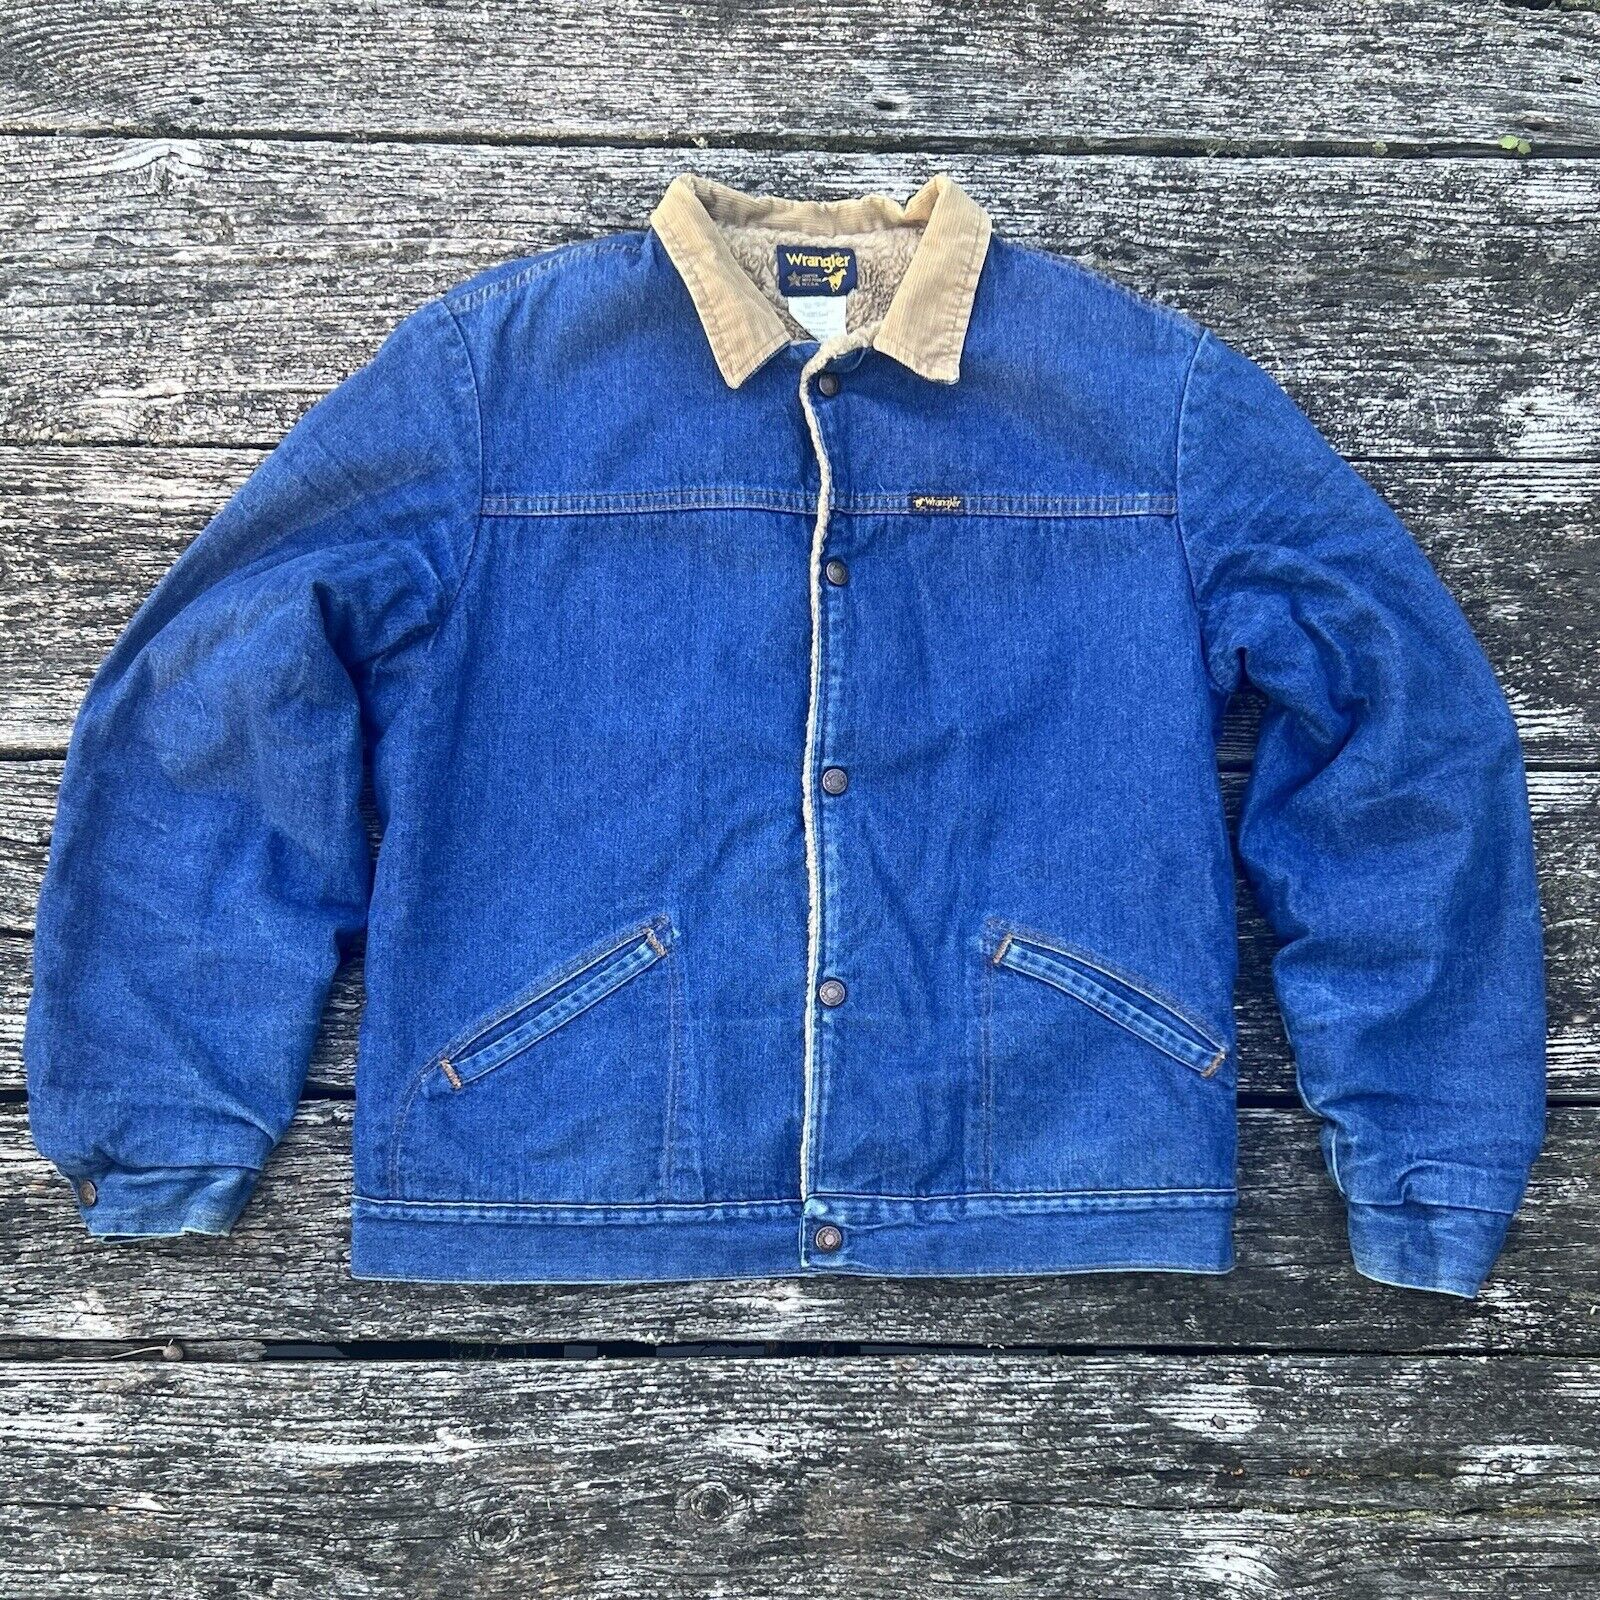 Vintage 70s Wrangler Denim Jacket Sherpa Lined